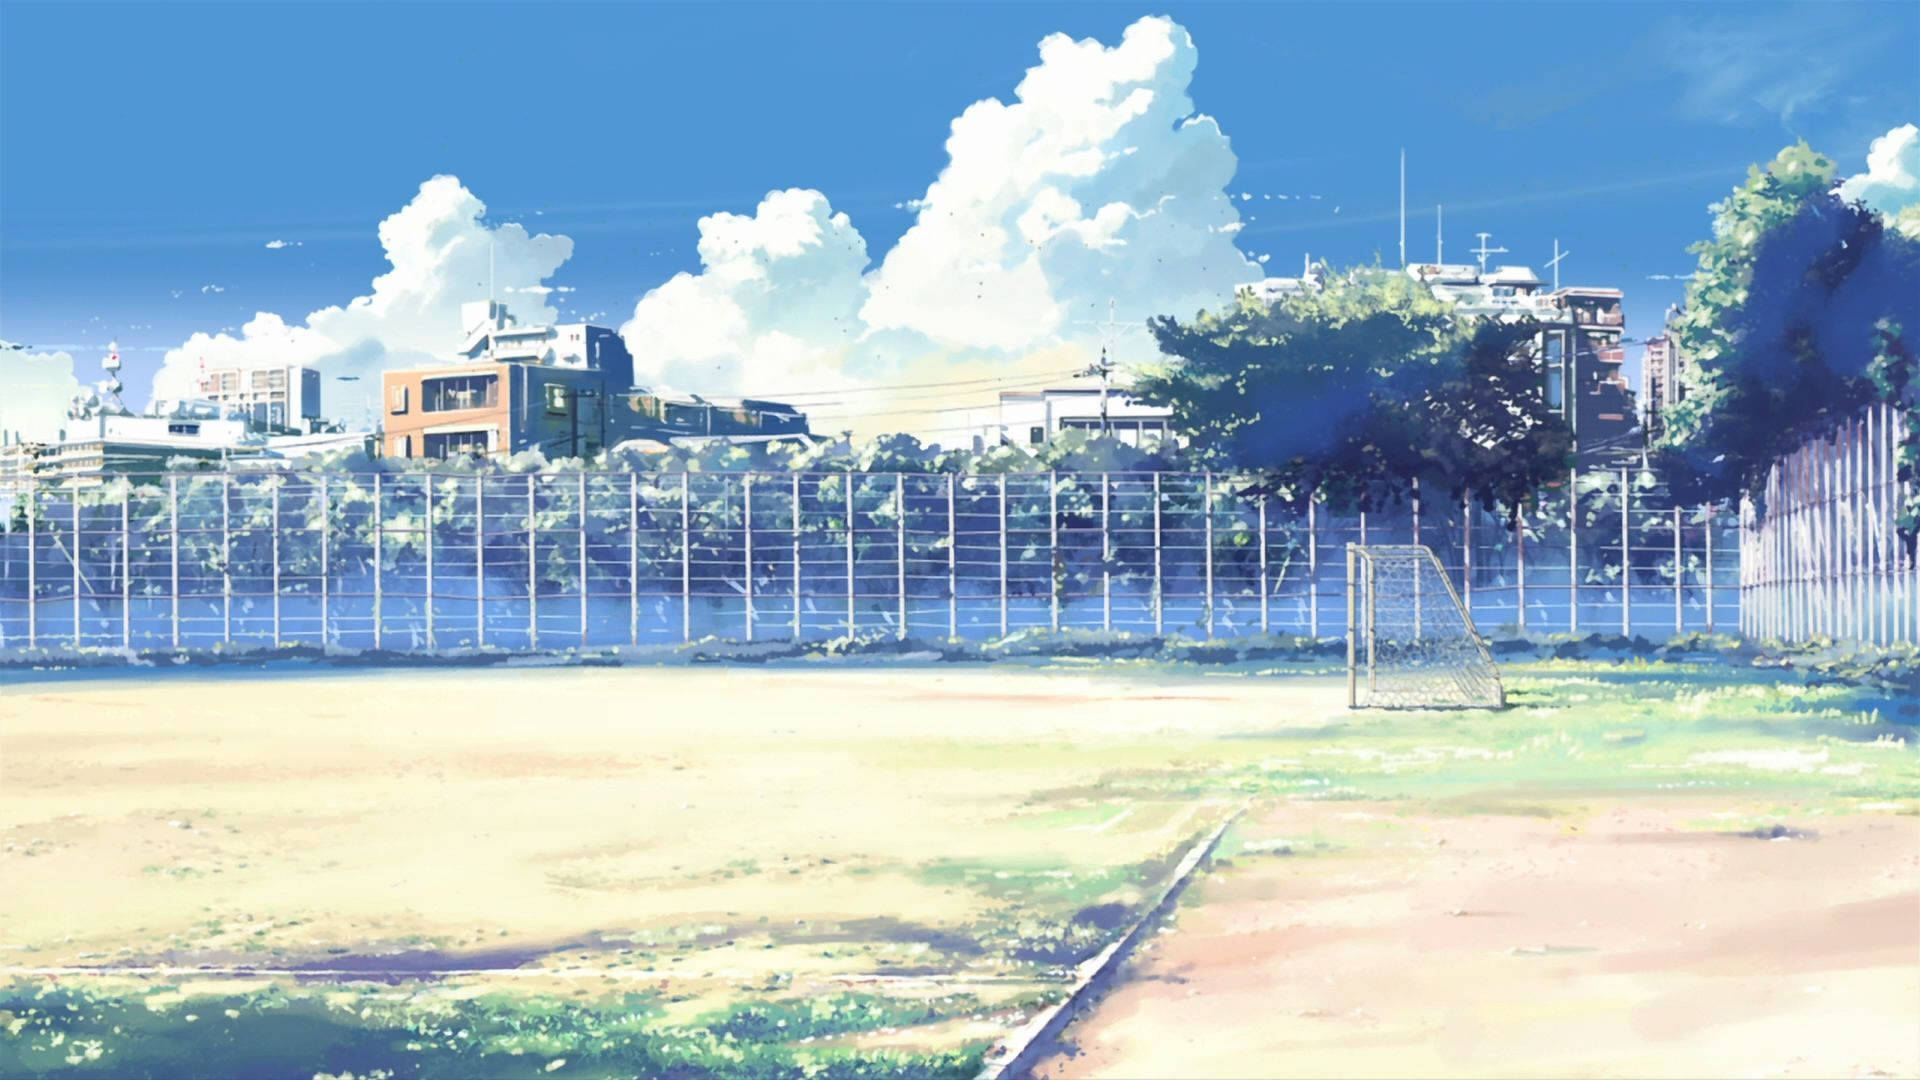 Anime School Scenery Soccer Field Background